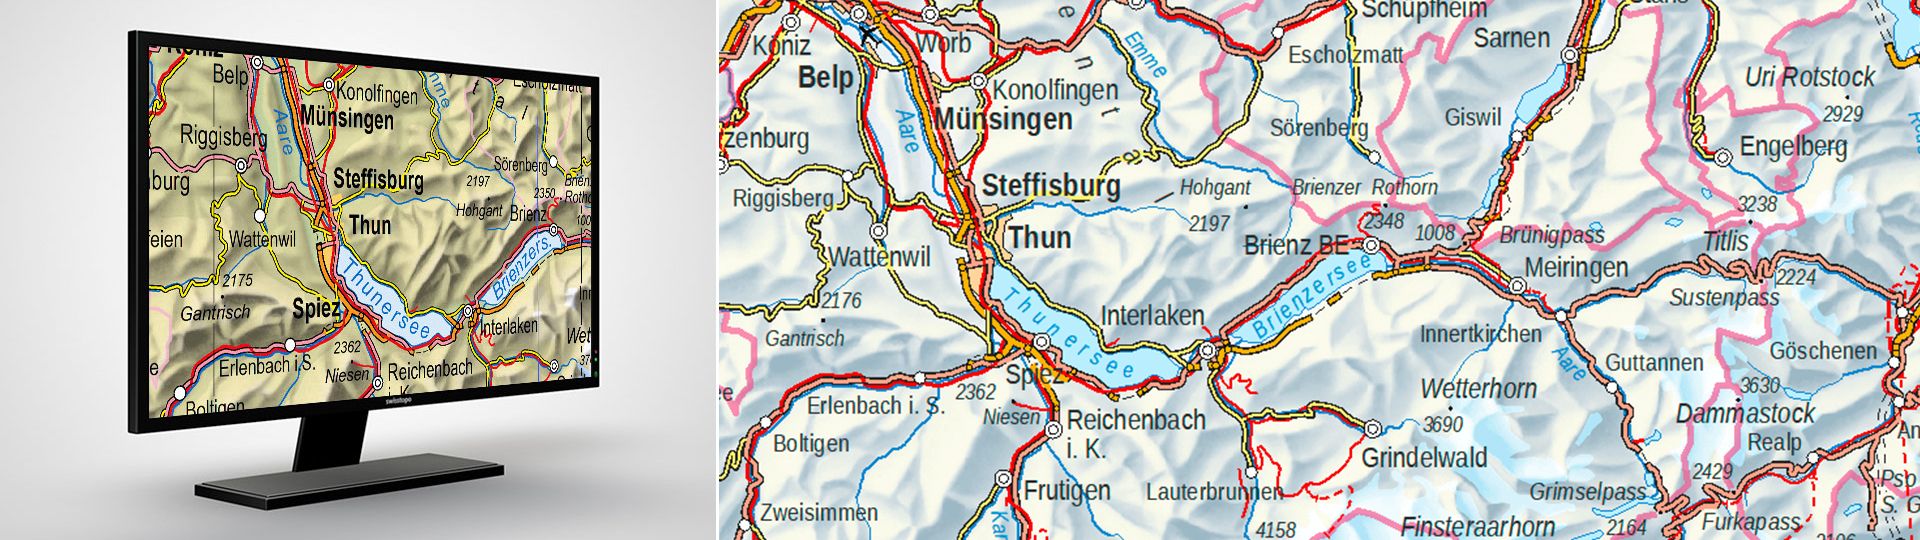 Swiss Map Vector 1000: les cartes nationales de la Suisse au 1:1000 000 en format vectoriel